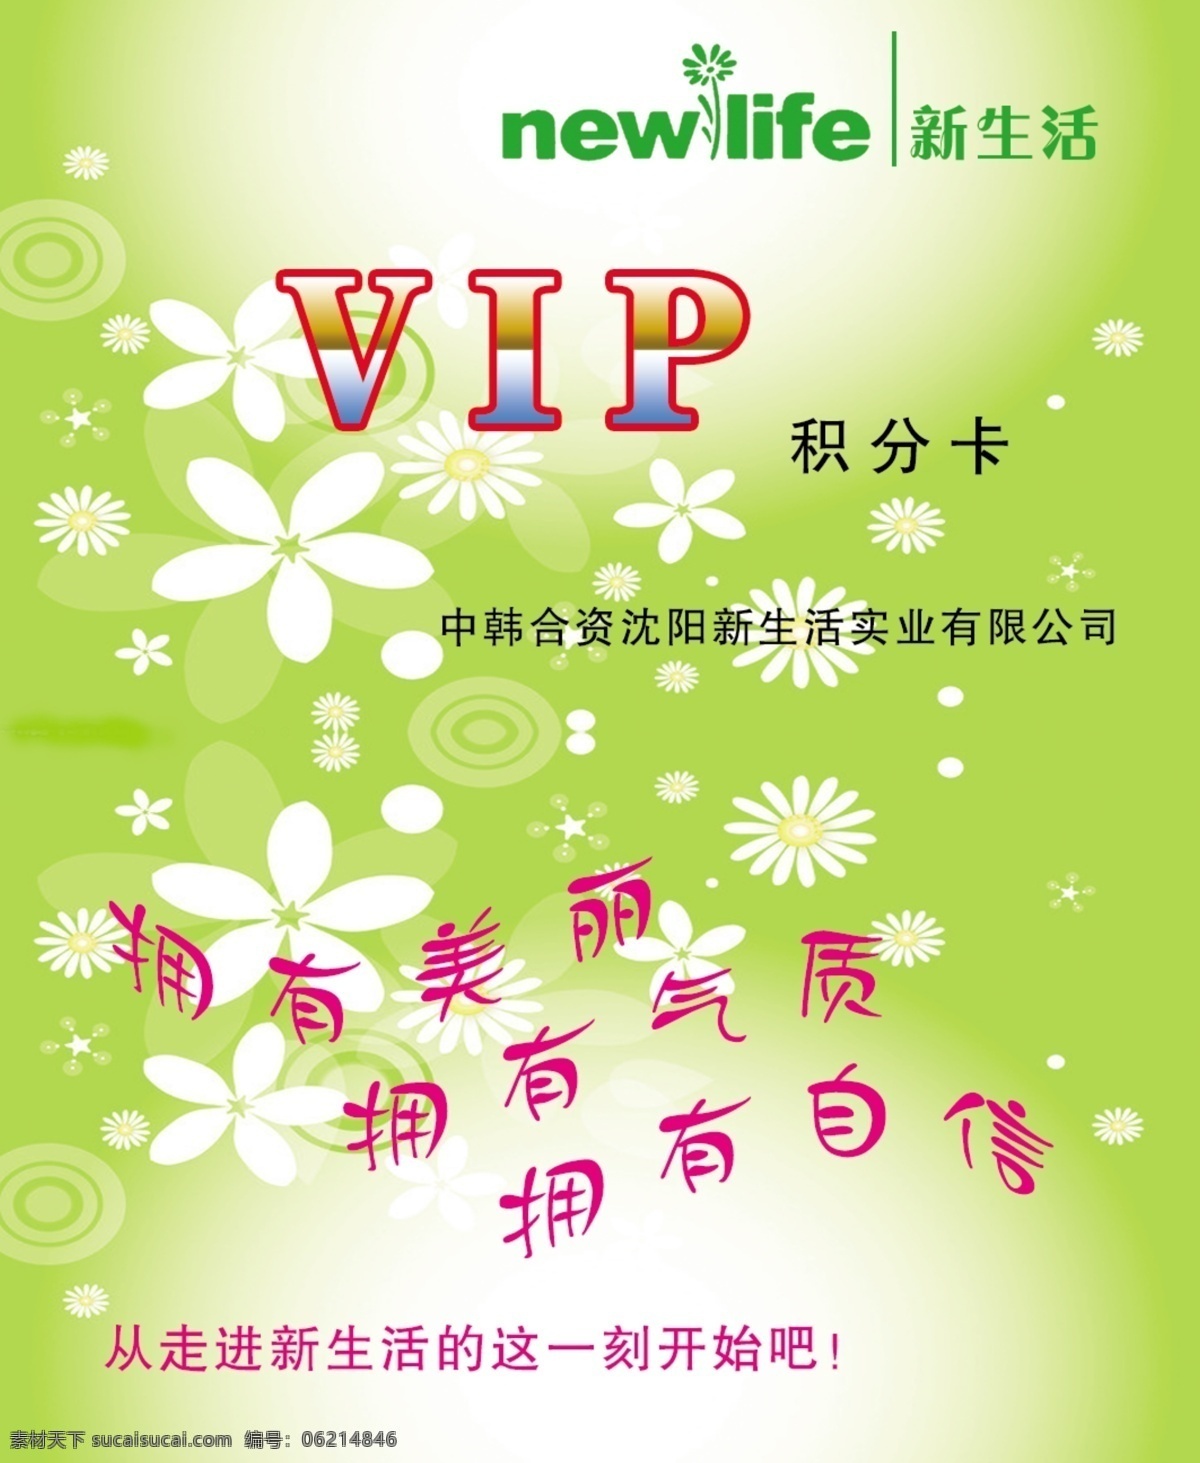 新生活 vip 卡 韩国新生活 新生活标志 积分卡 vip积分卡 名片卡片 广告设计模板 源文件